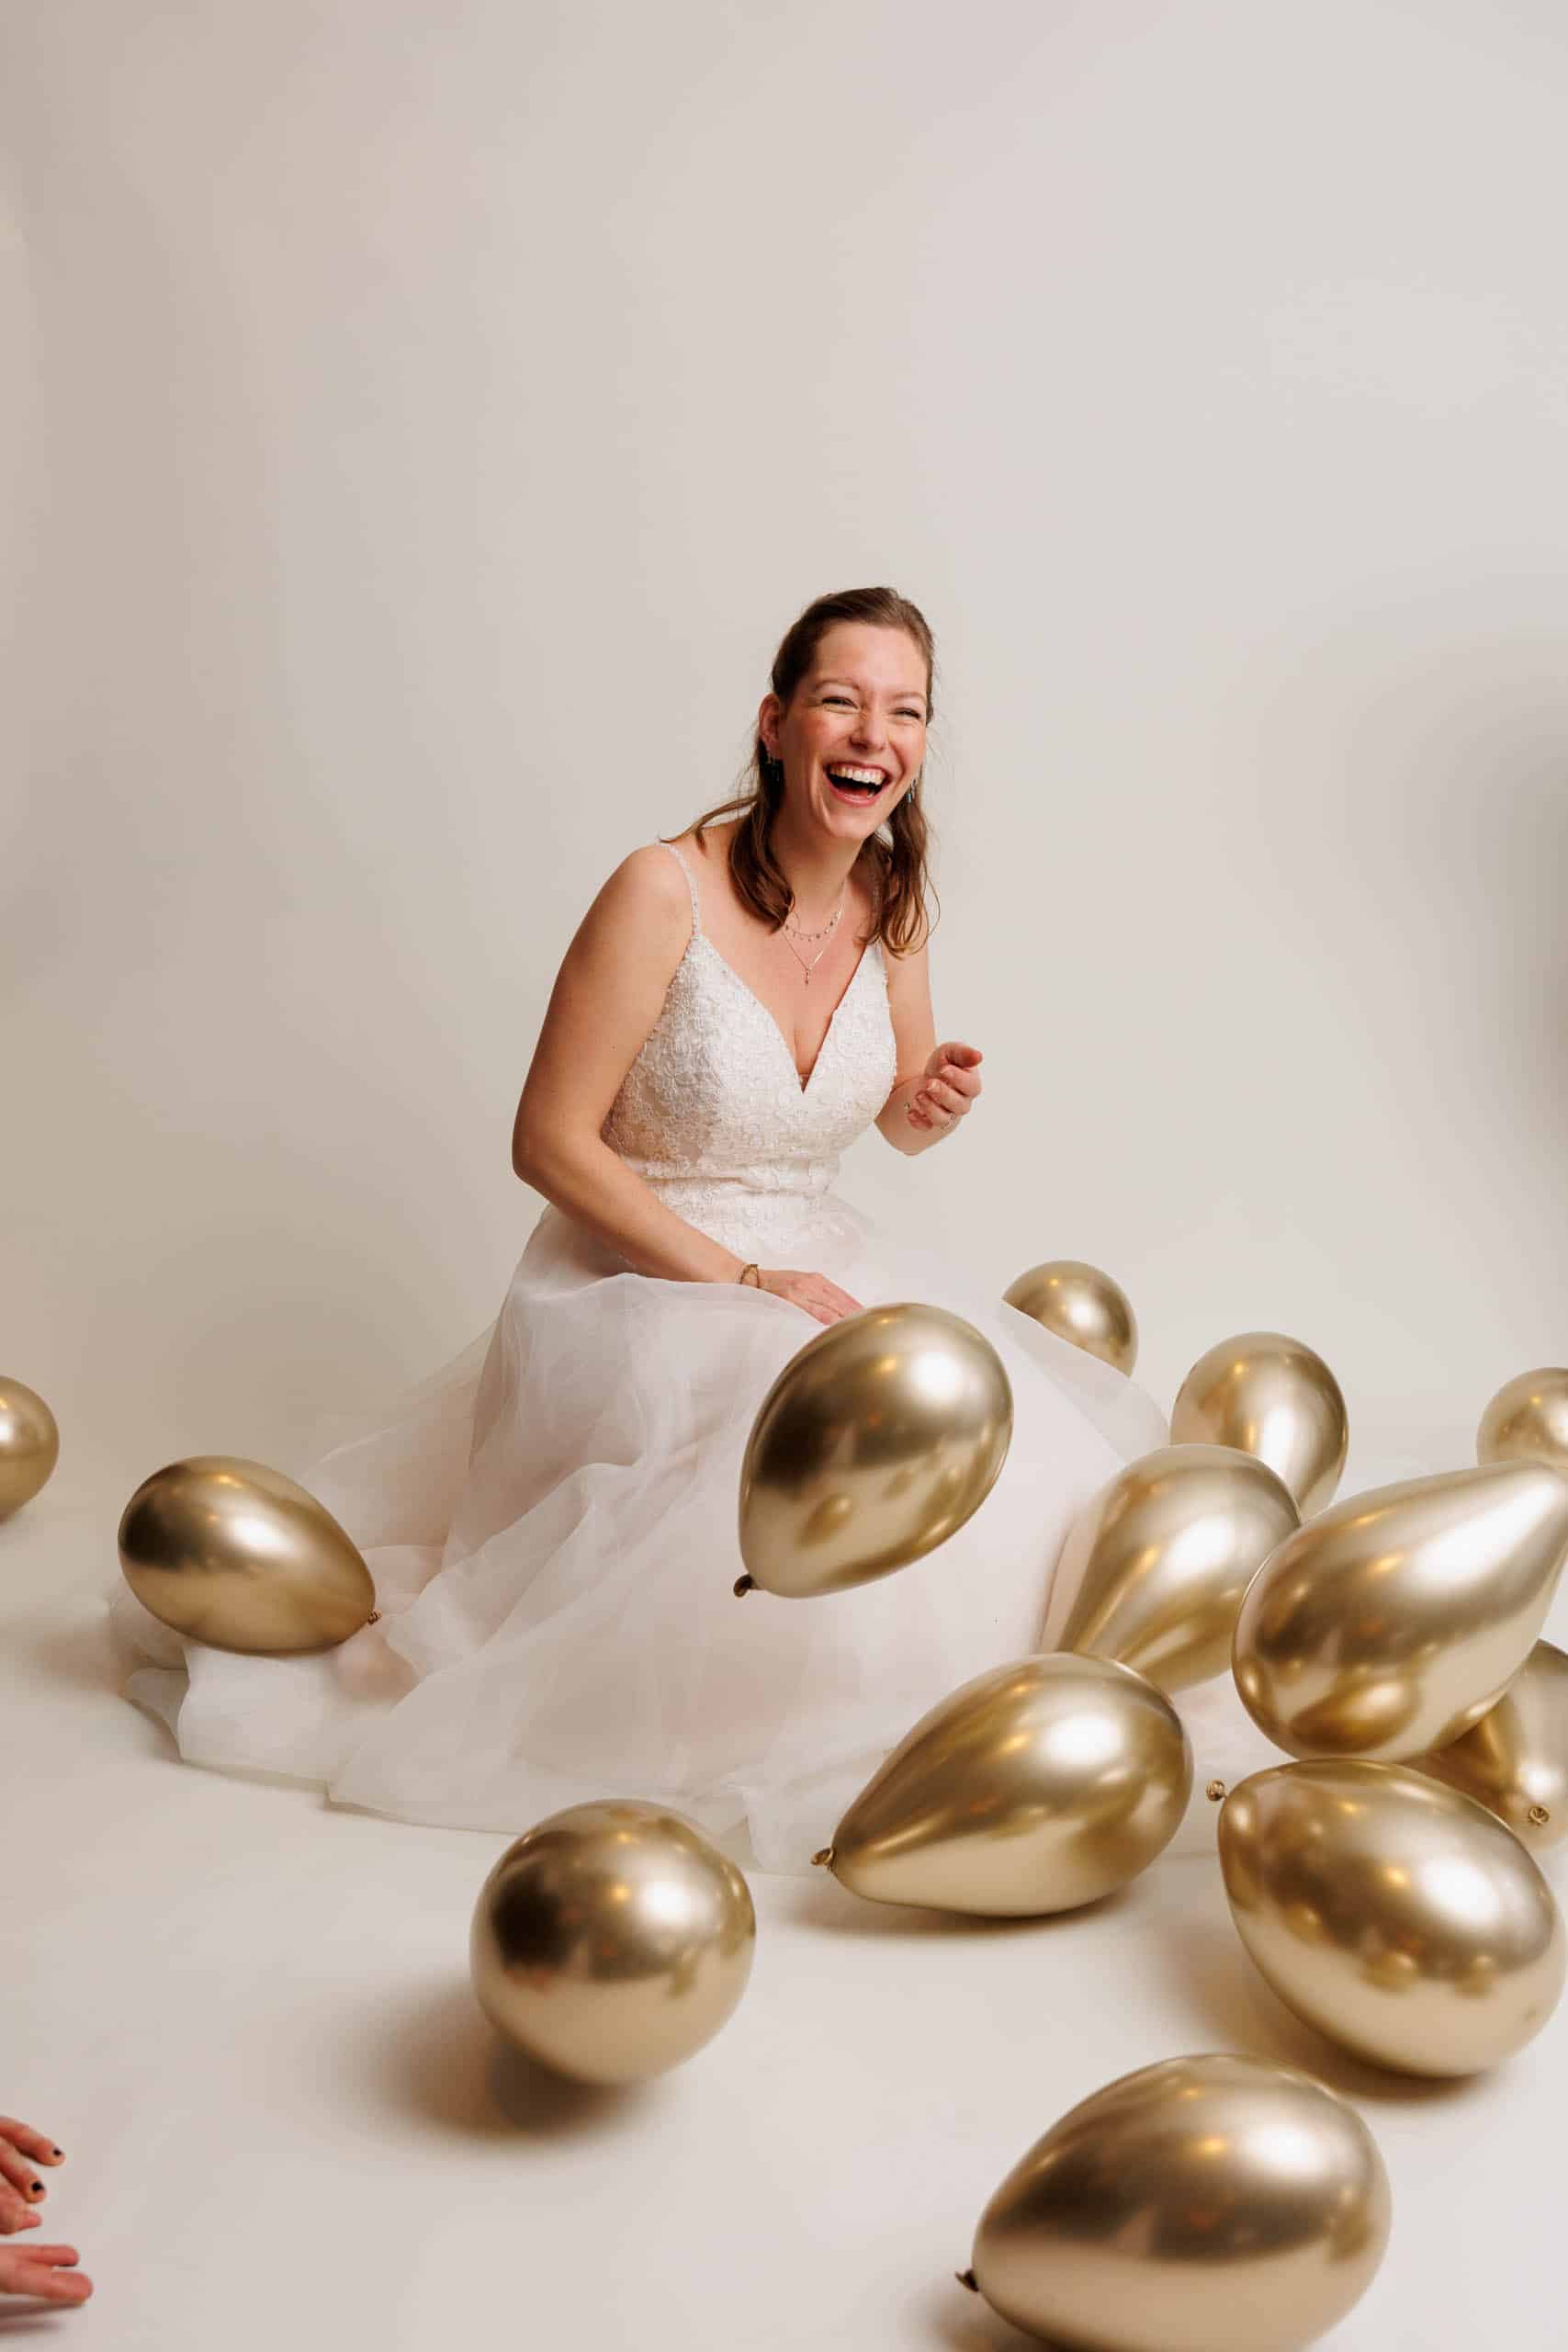 Beschrijving: Een bruid in een witte trouwjurk met gouden ballonnen om haar heen.